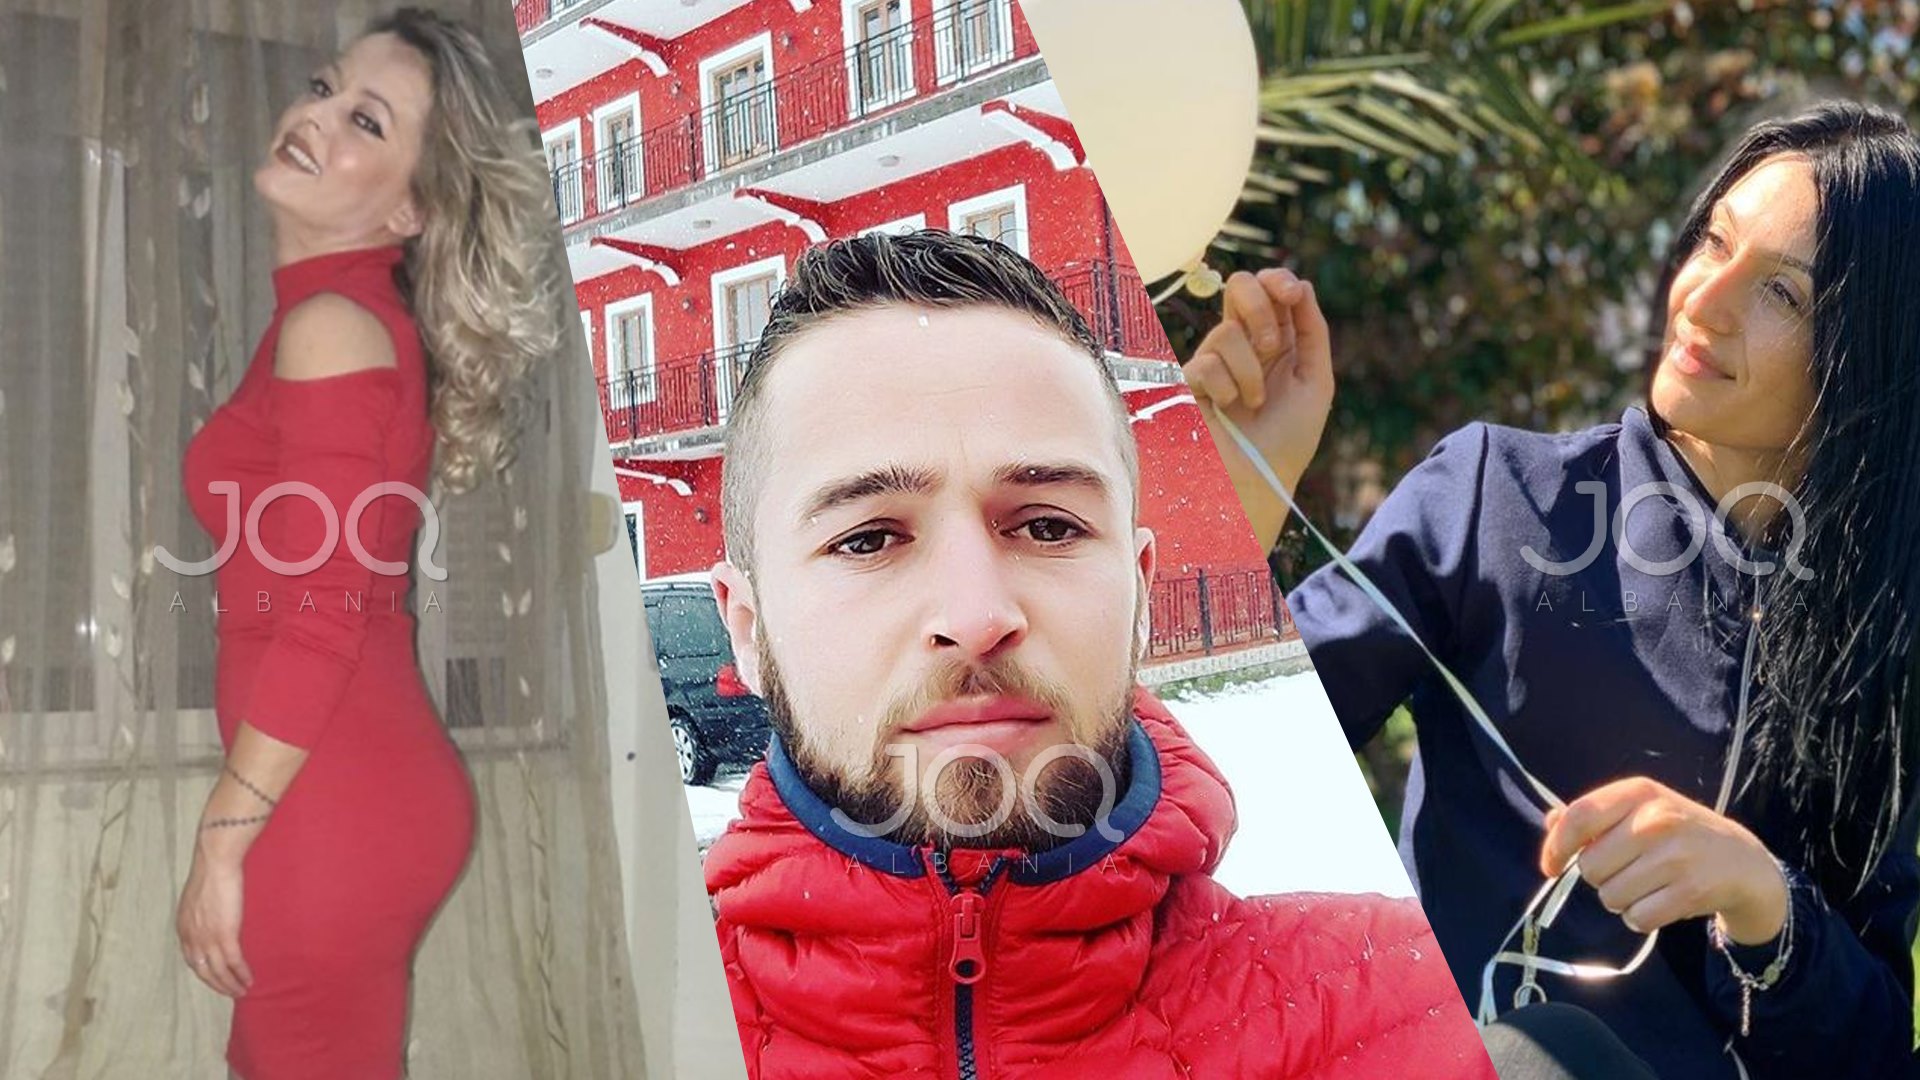 Habiti një Shqipëri të tërë me historinë e të dashurave/ Reagon për herë të parë Noja në Instagram